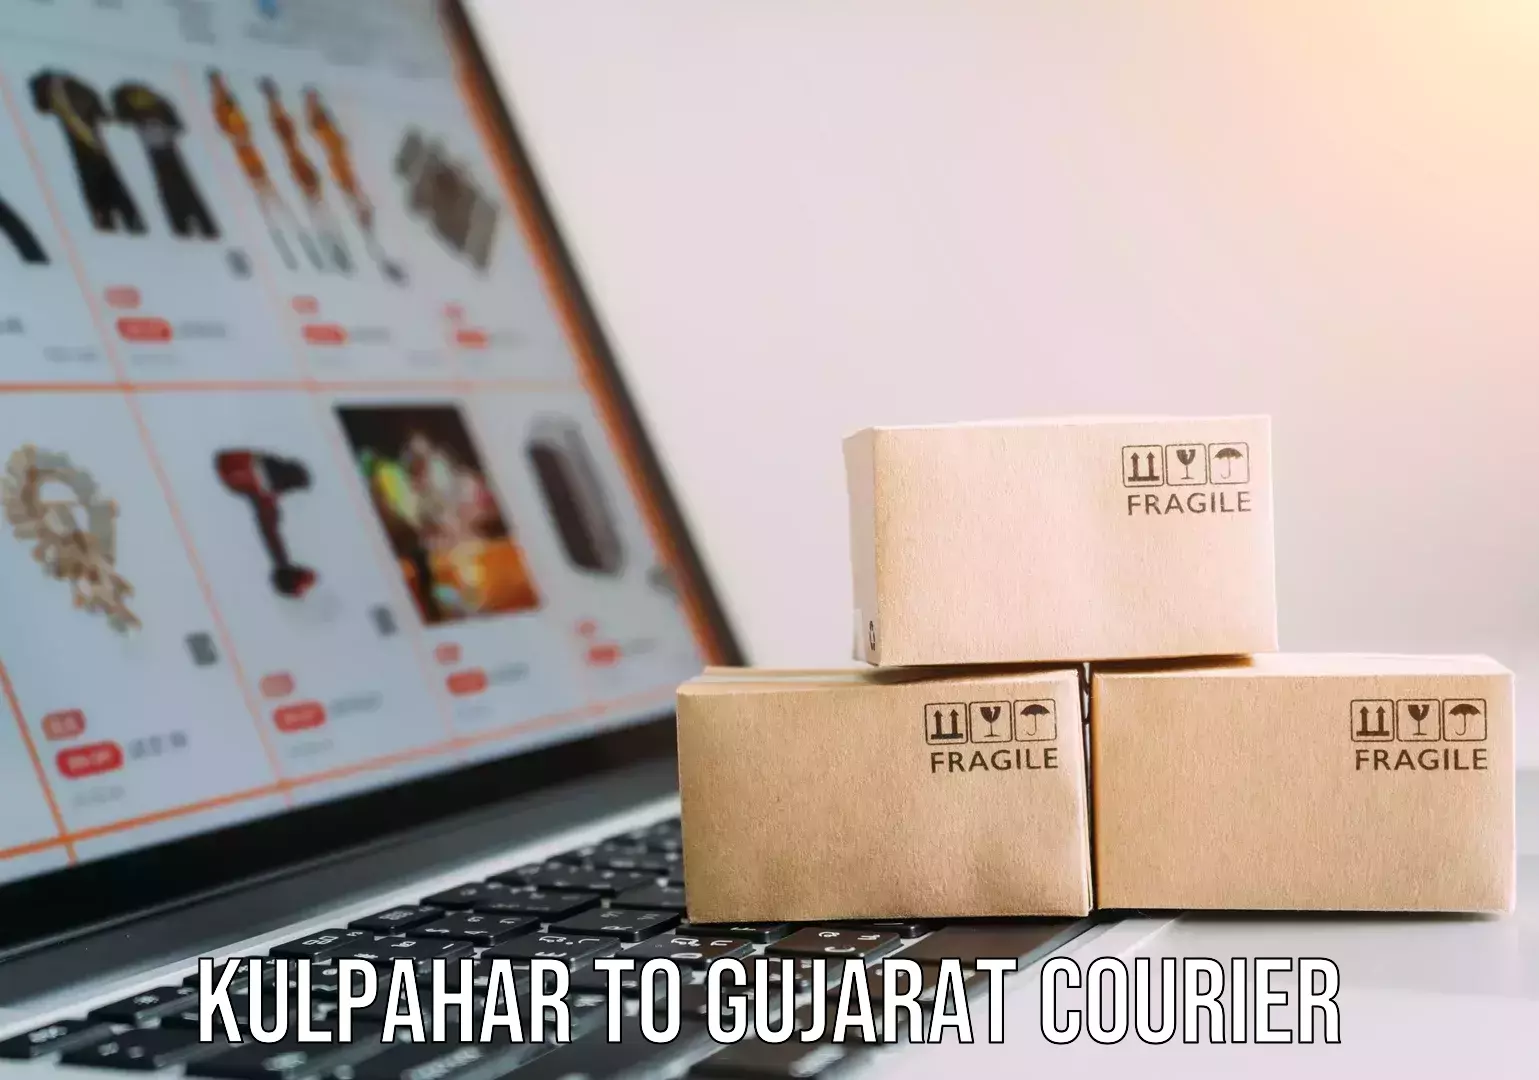 Furniture transport specialists Kulpahar to Gujarat